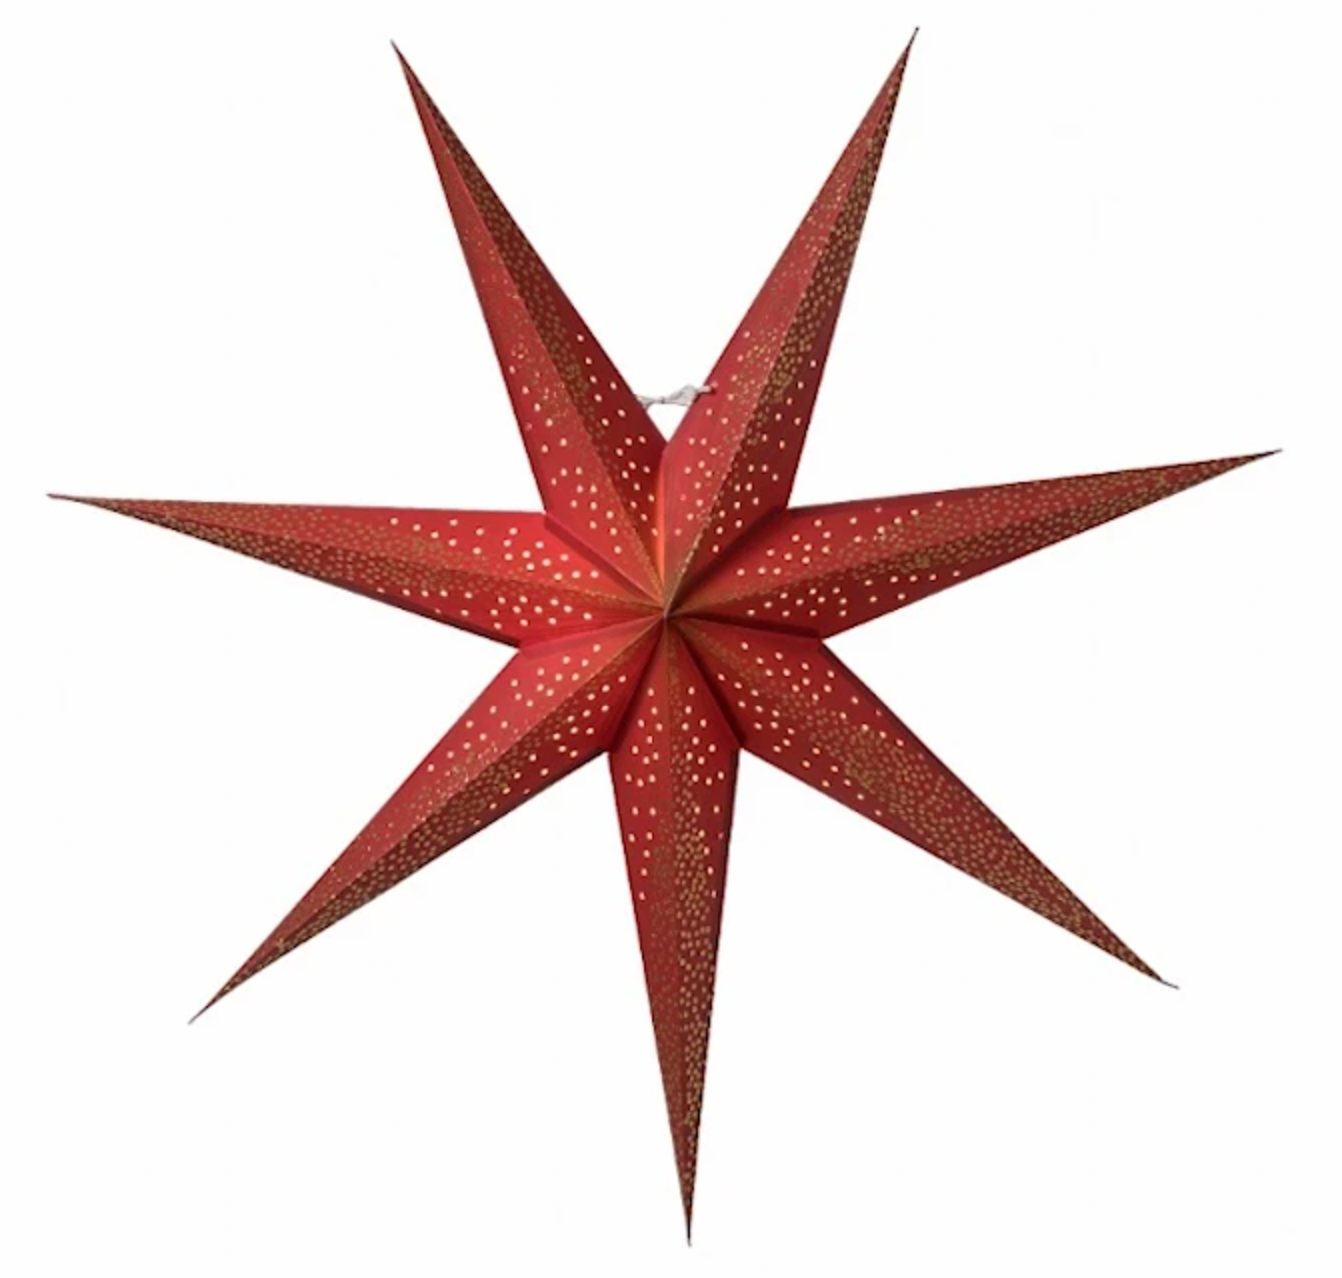 Röd pappersjulstjärna från Watt & Veke